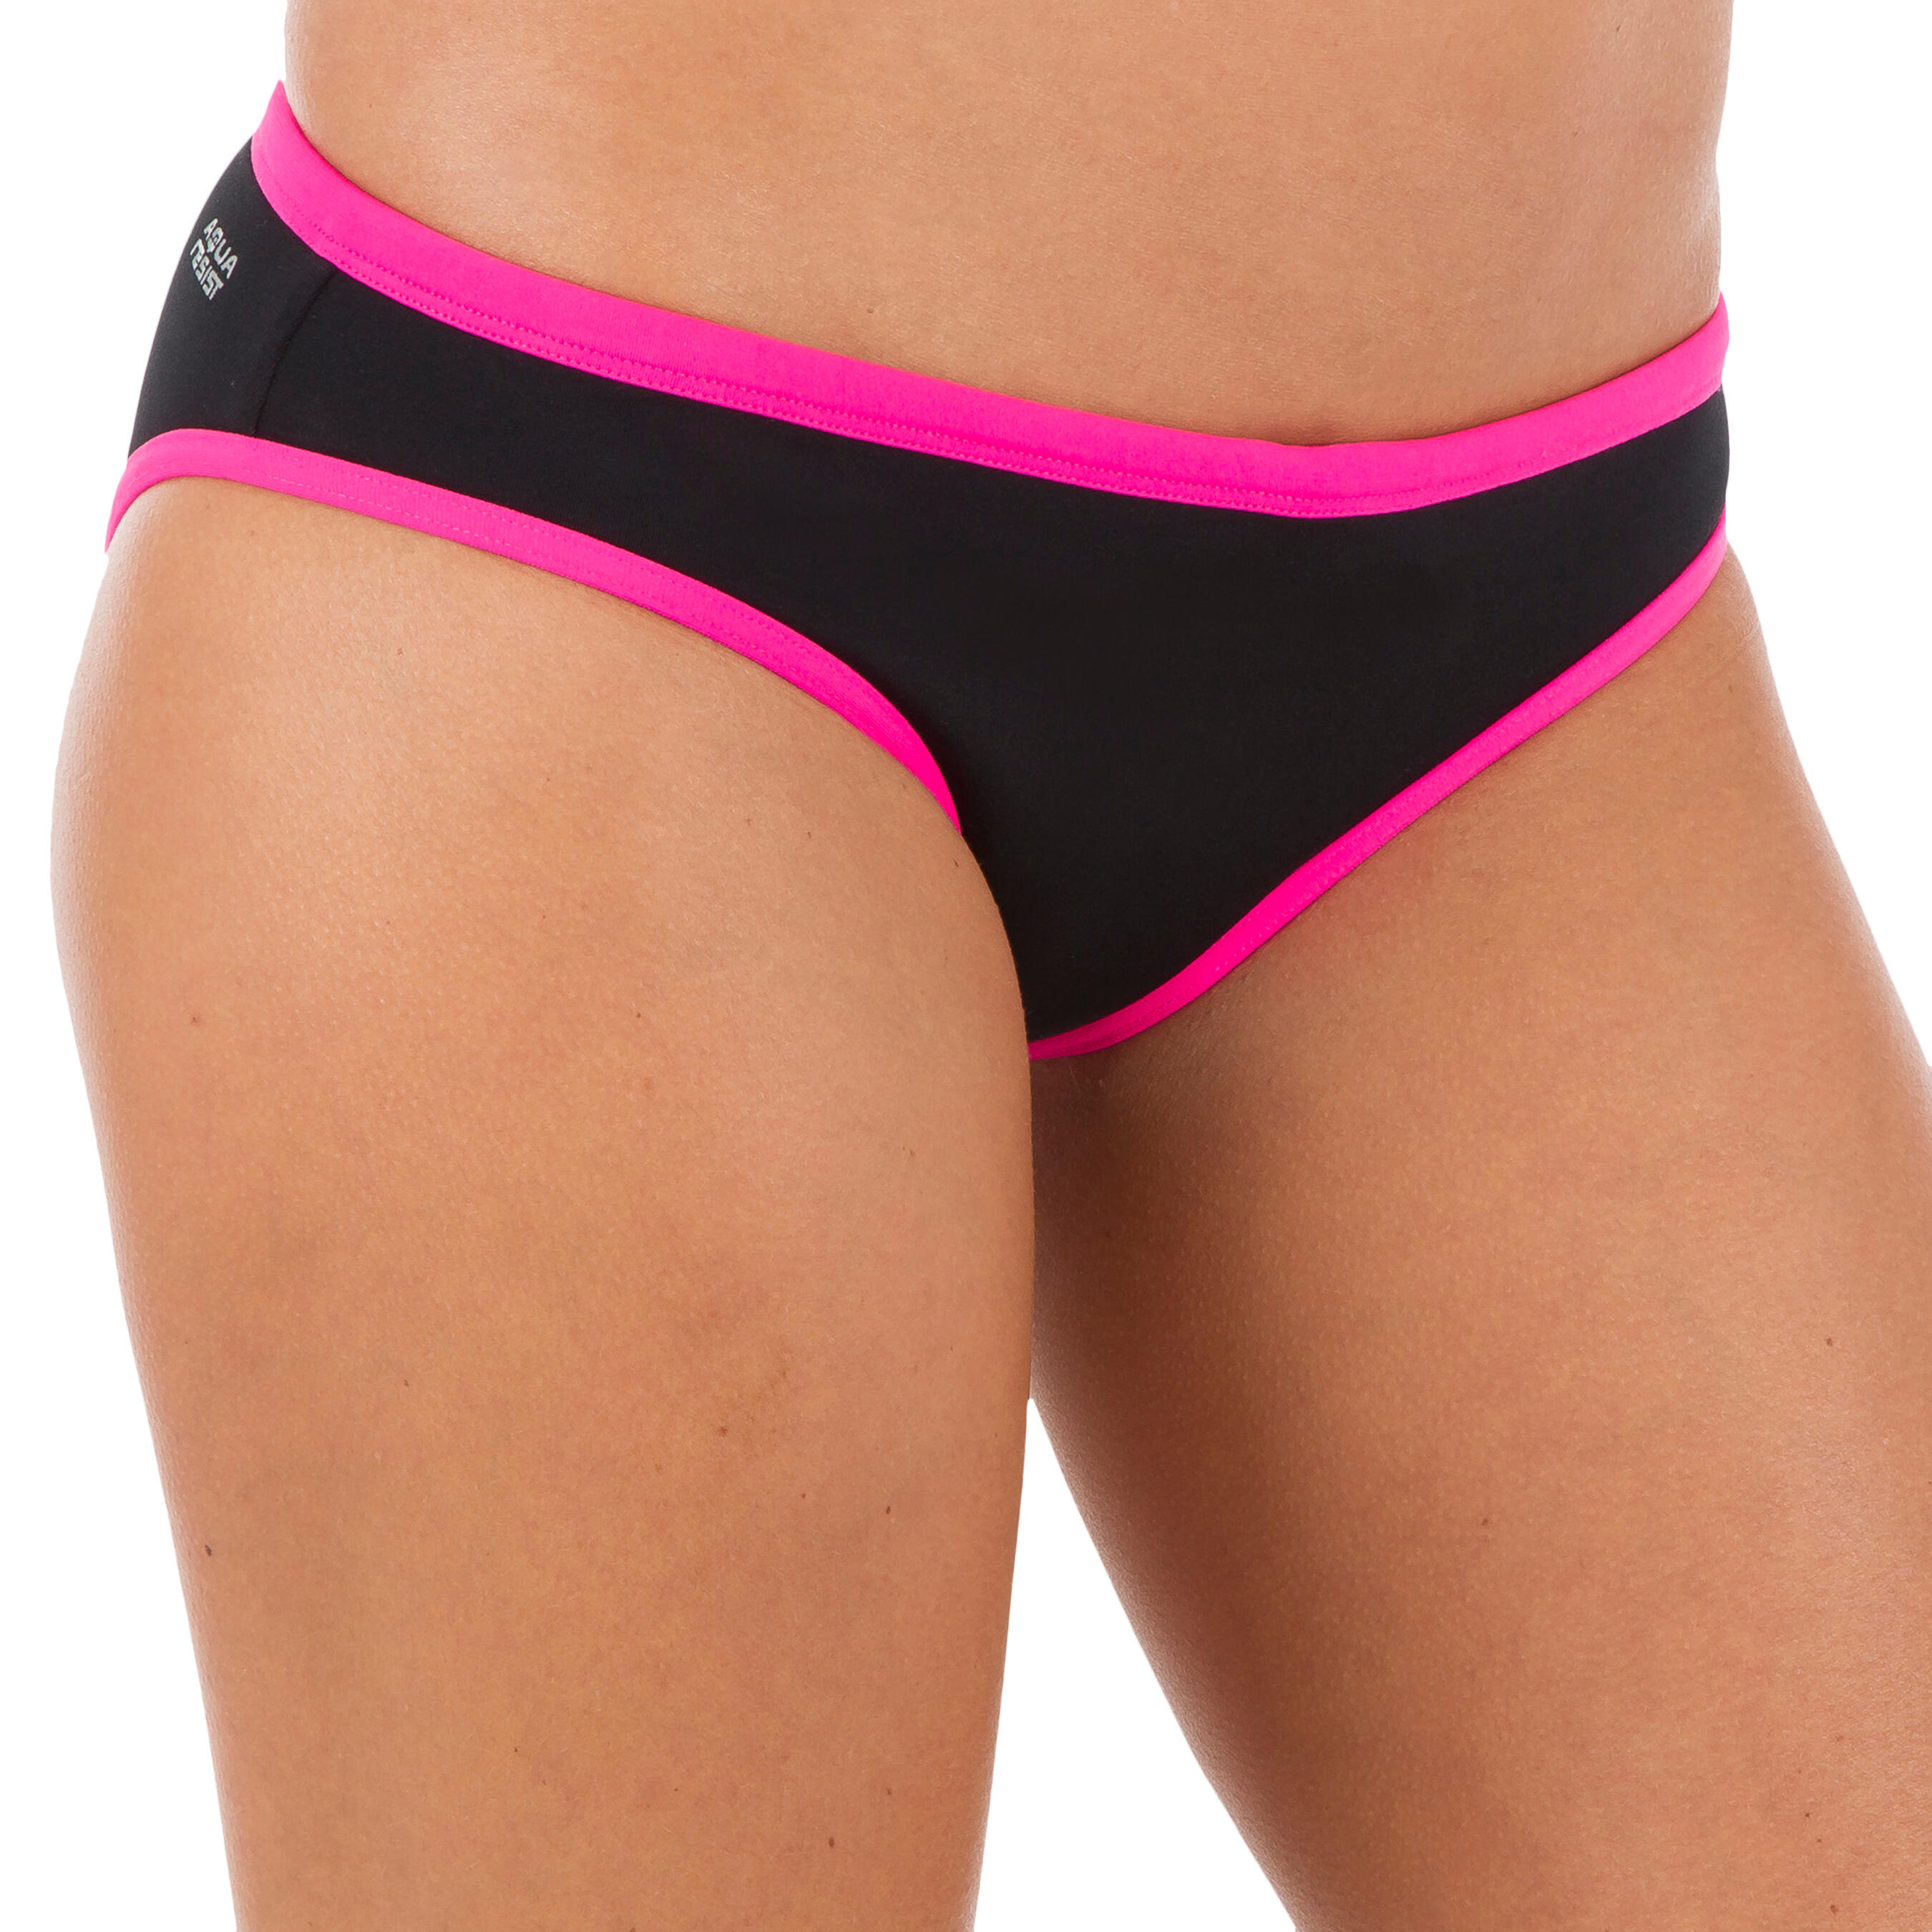 NABAIJI Jade Women's Chlorine Resistant Swimsuit Bottoms - Black/Pink